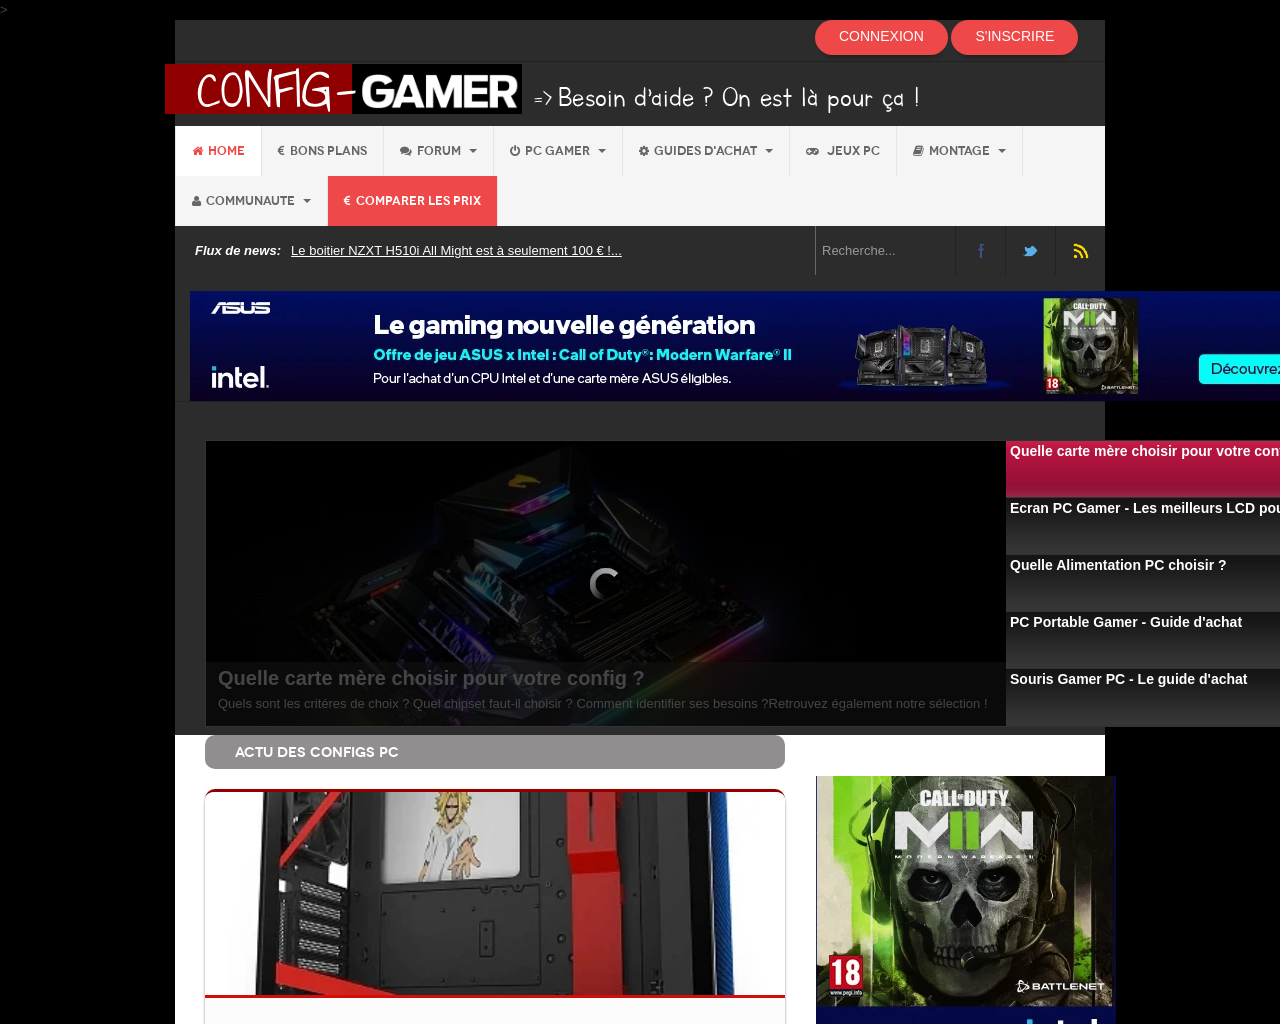 www.config-gamer.fr